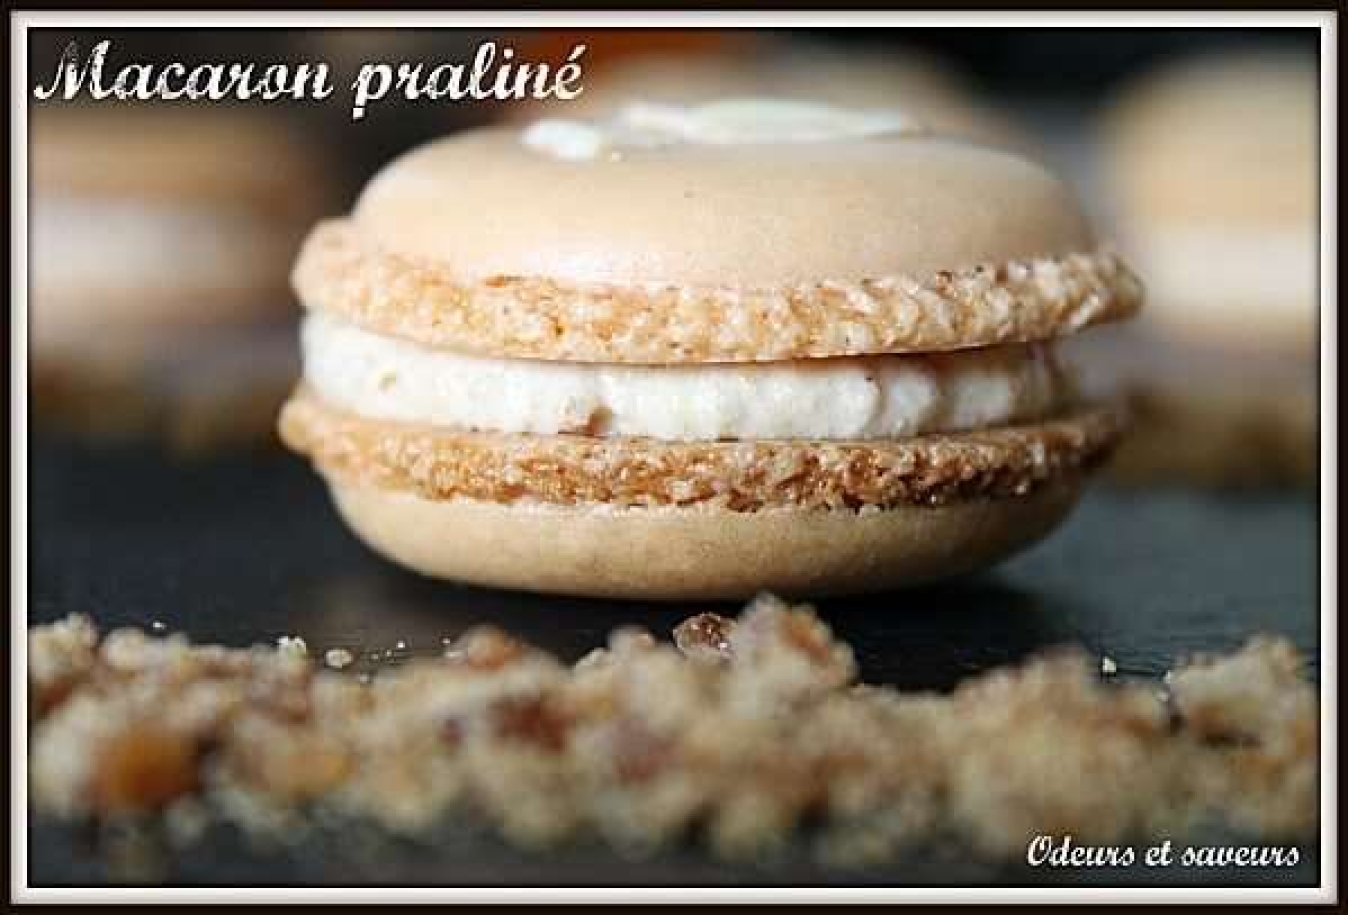 La recette de Céline kuisine : Macaron praliné